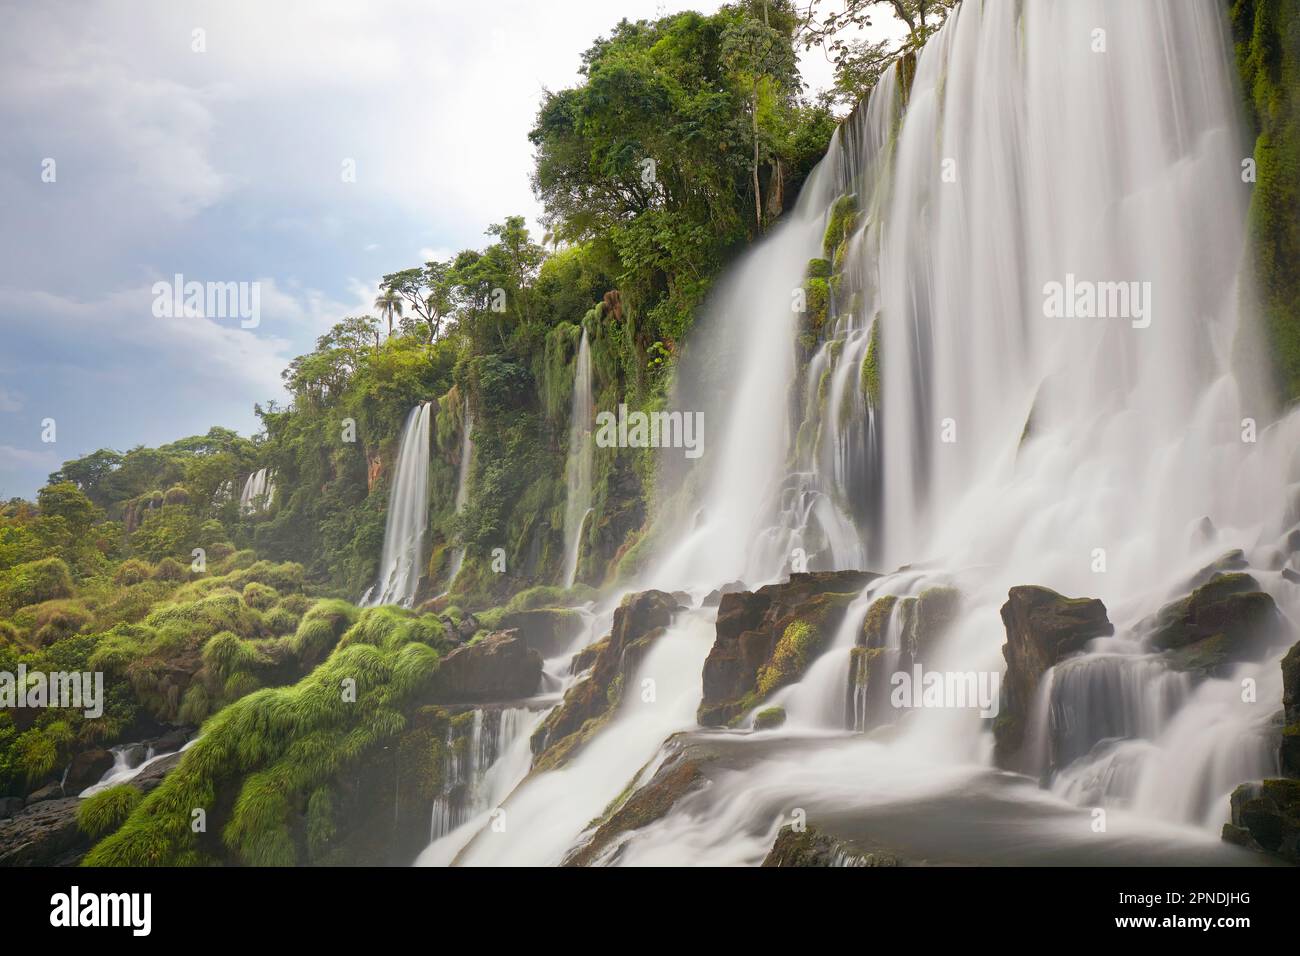 La cascade 'Salto Ramirez' à l'intérieur du parc national d'Iguazu, Misiones, Argentine. Banque D'Images